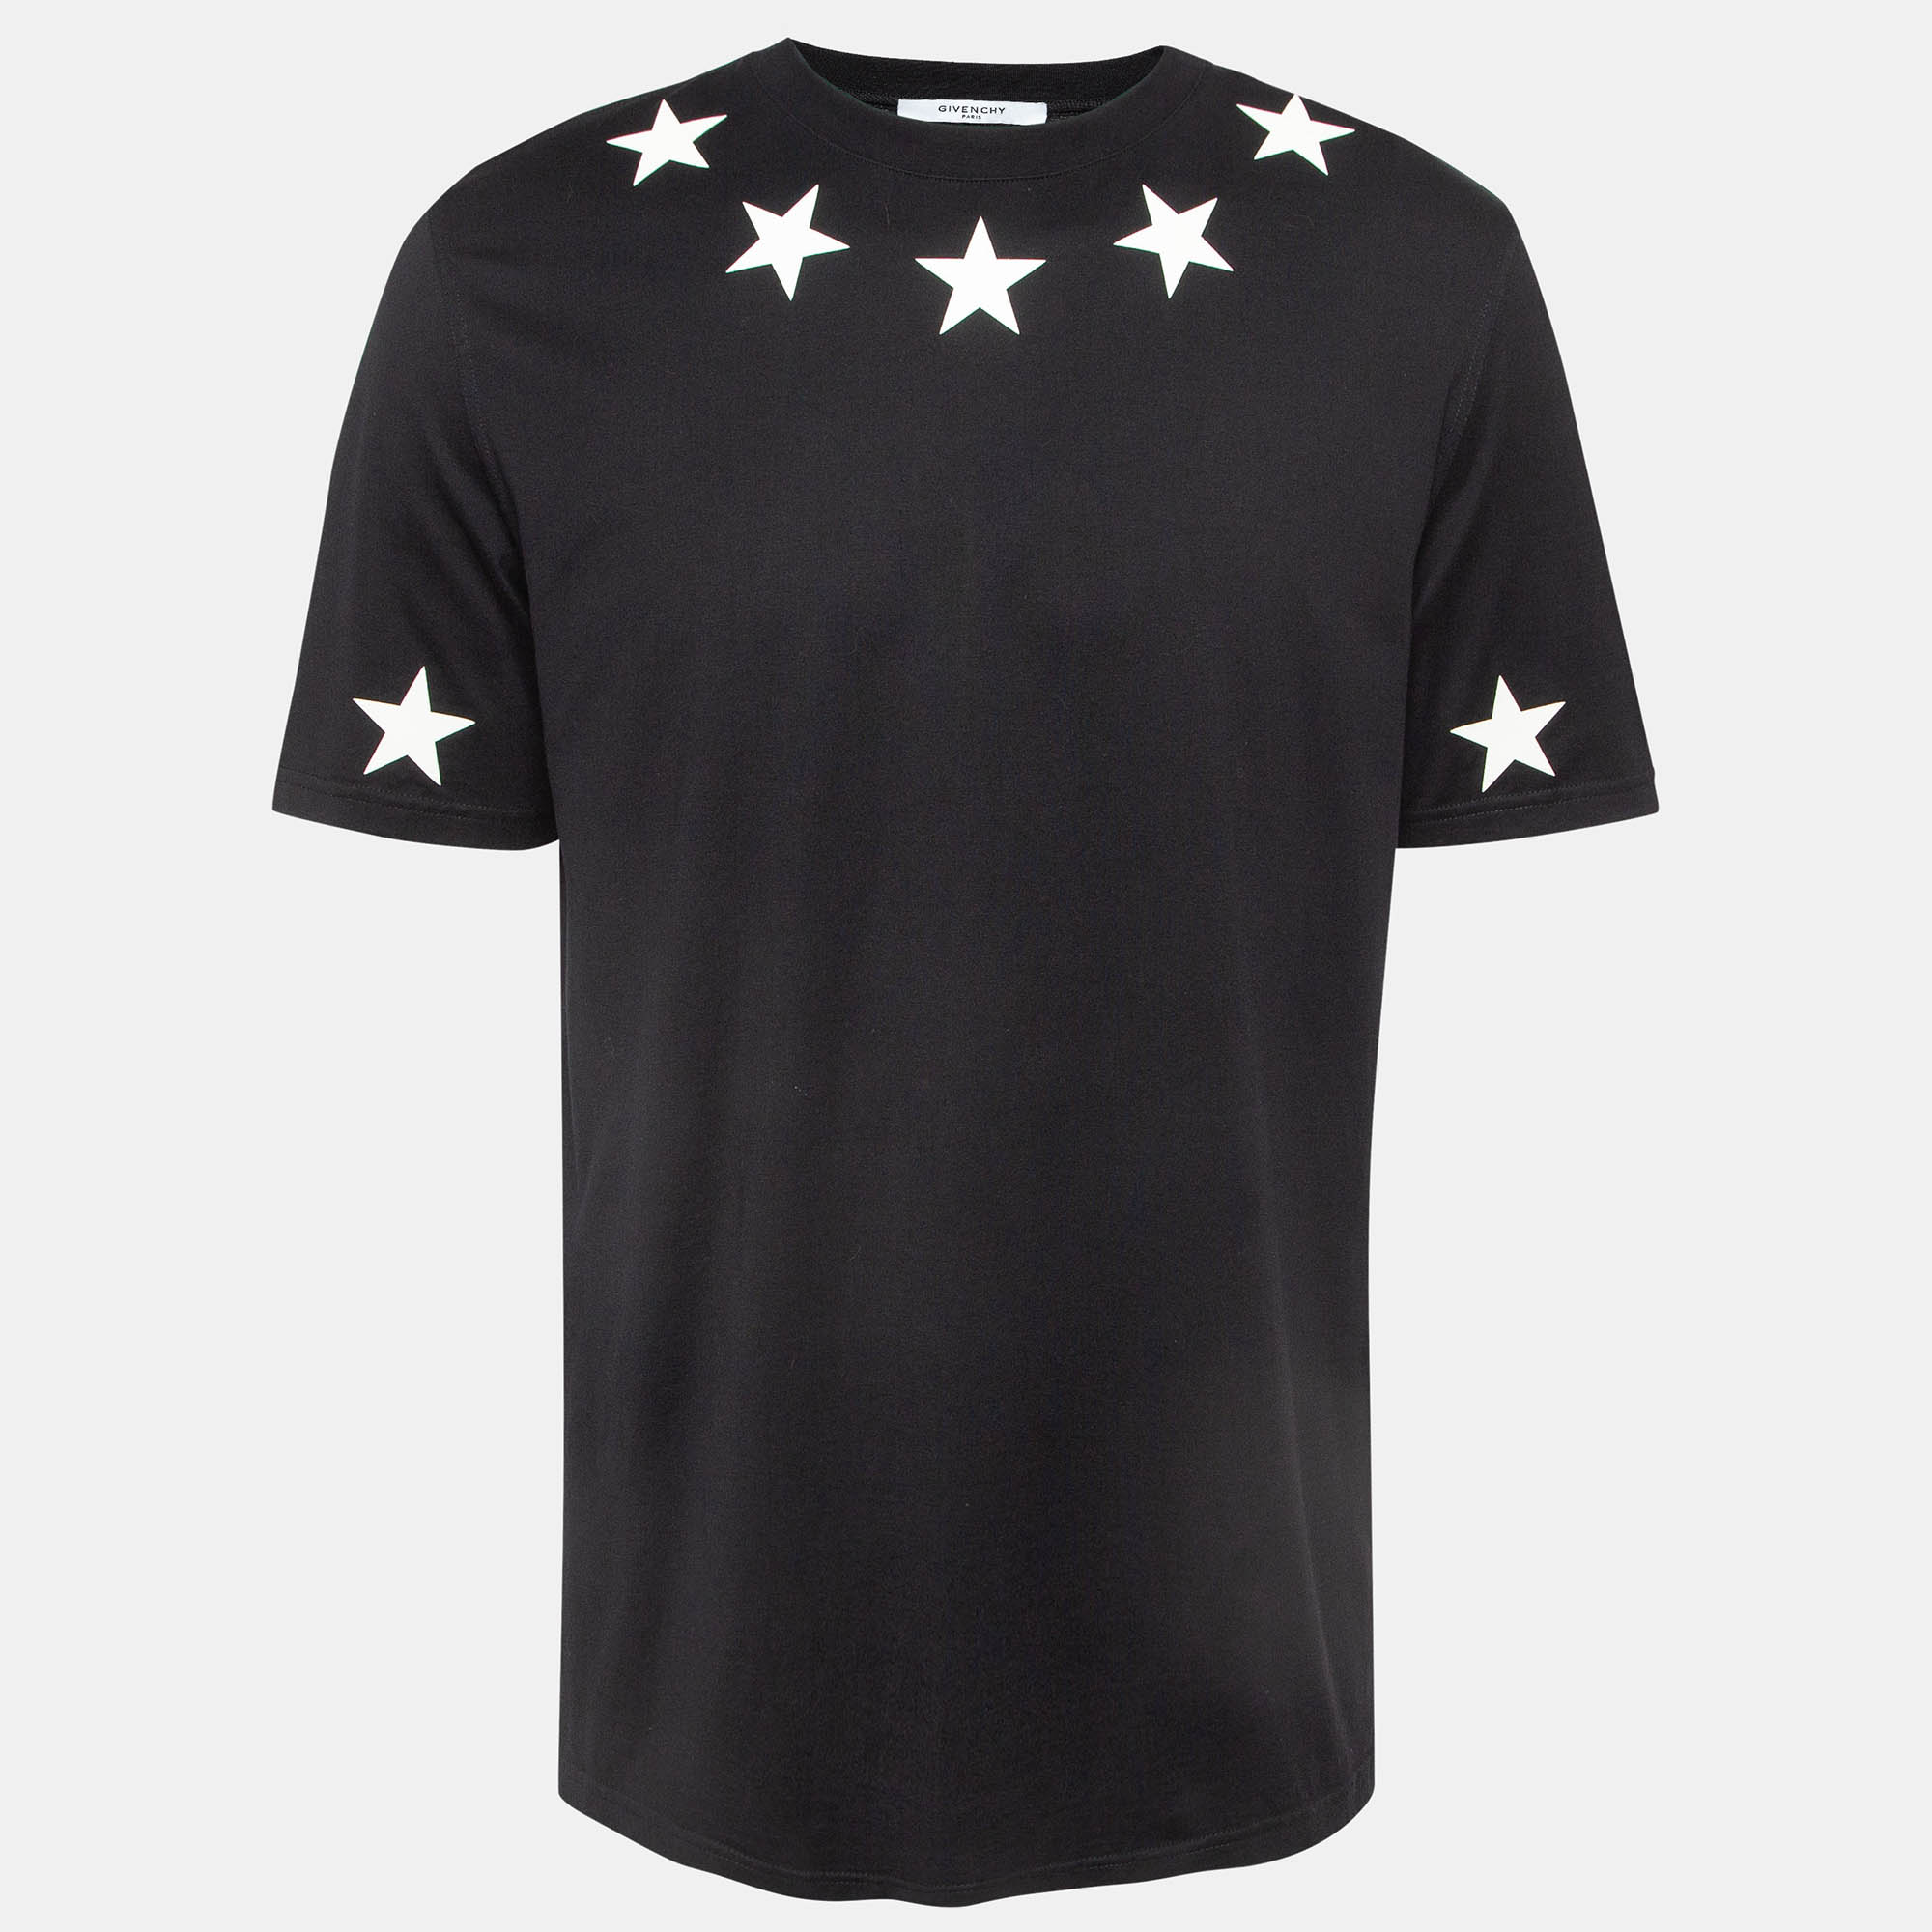 

Givenchy Black Star Print Cotton T-Shirt M